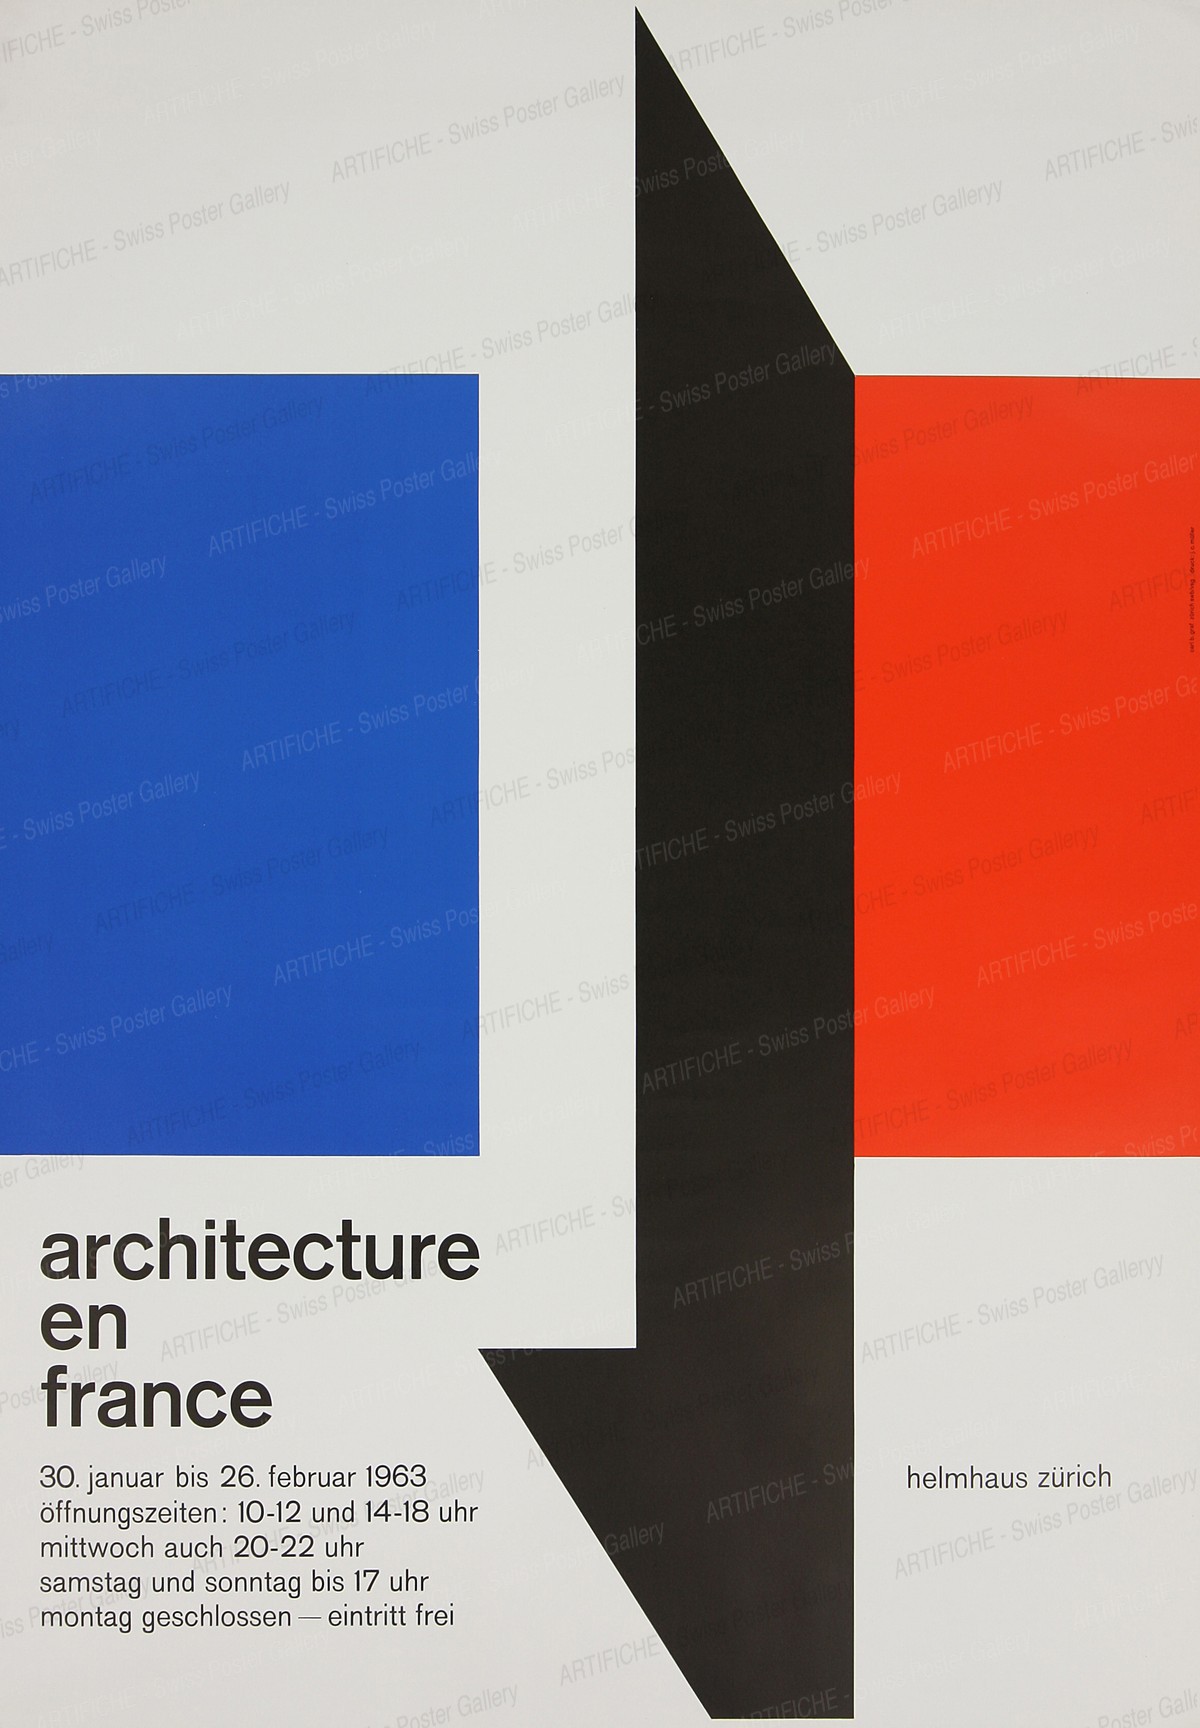 Zurich Helmhaus – Architecture in France, Carl B. Graf